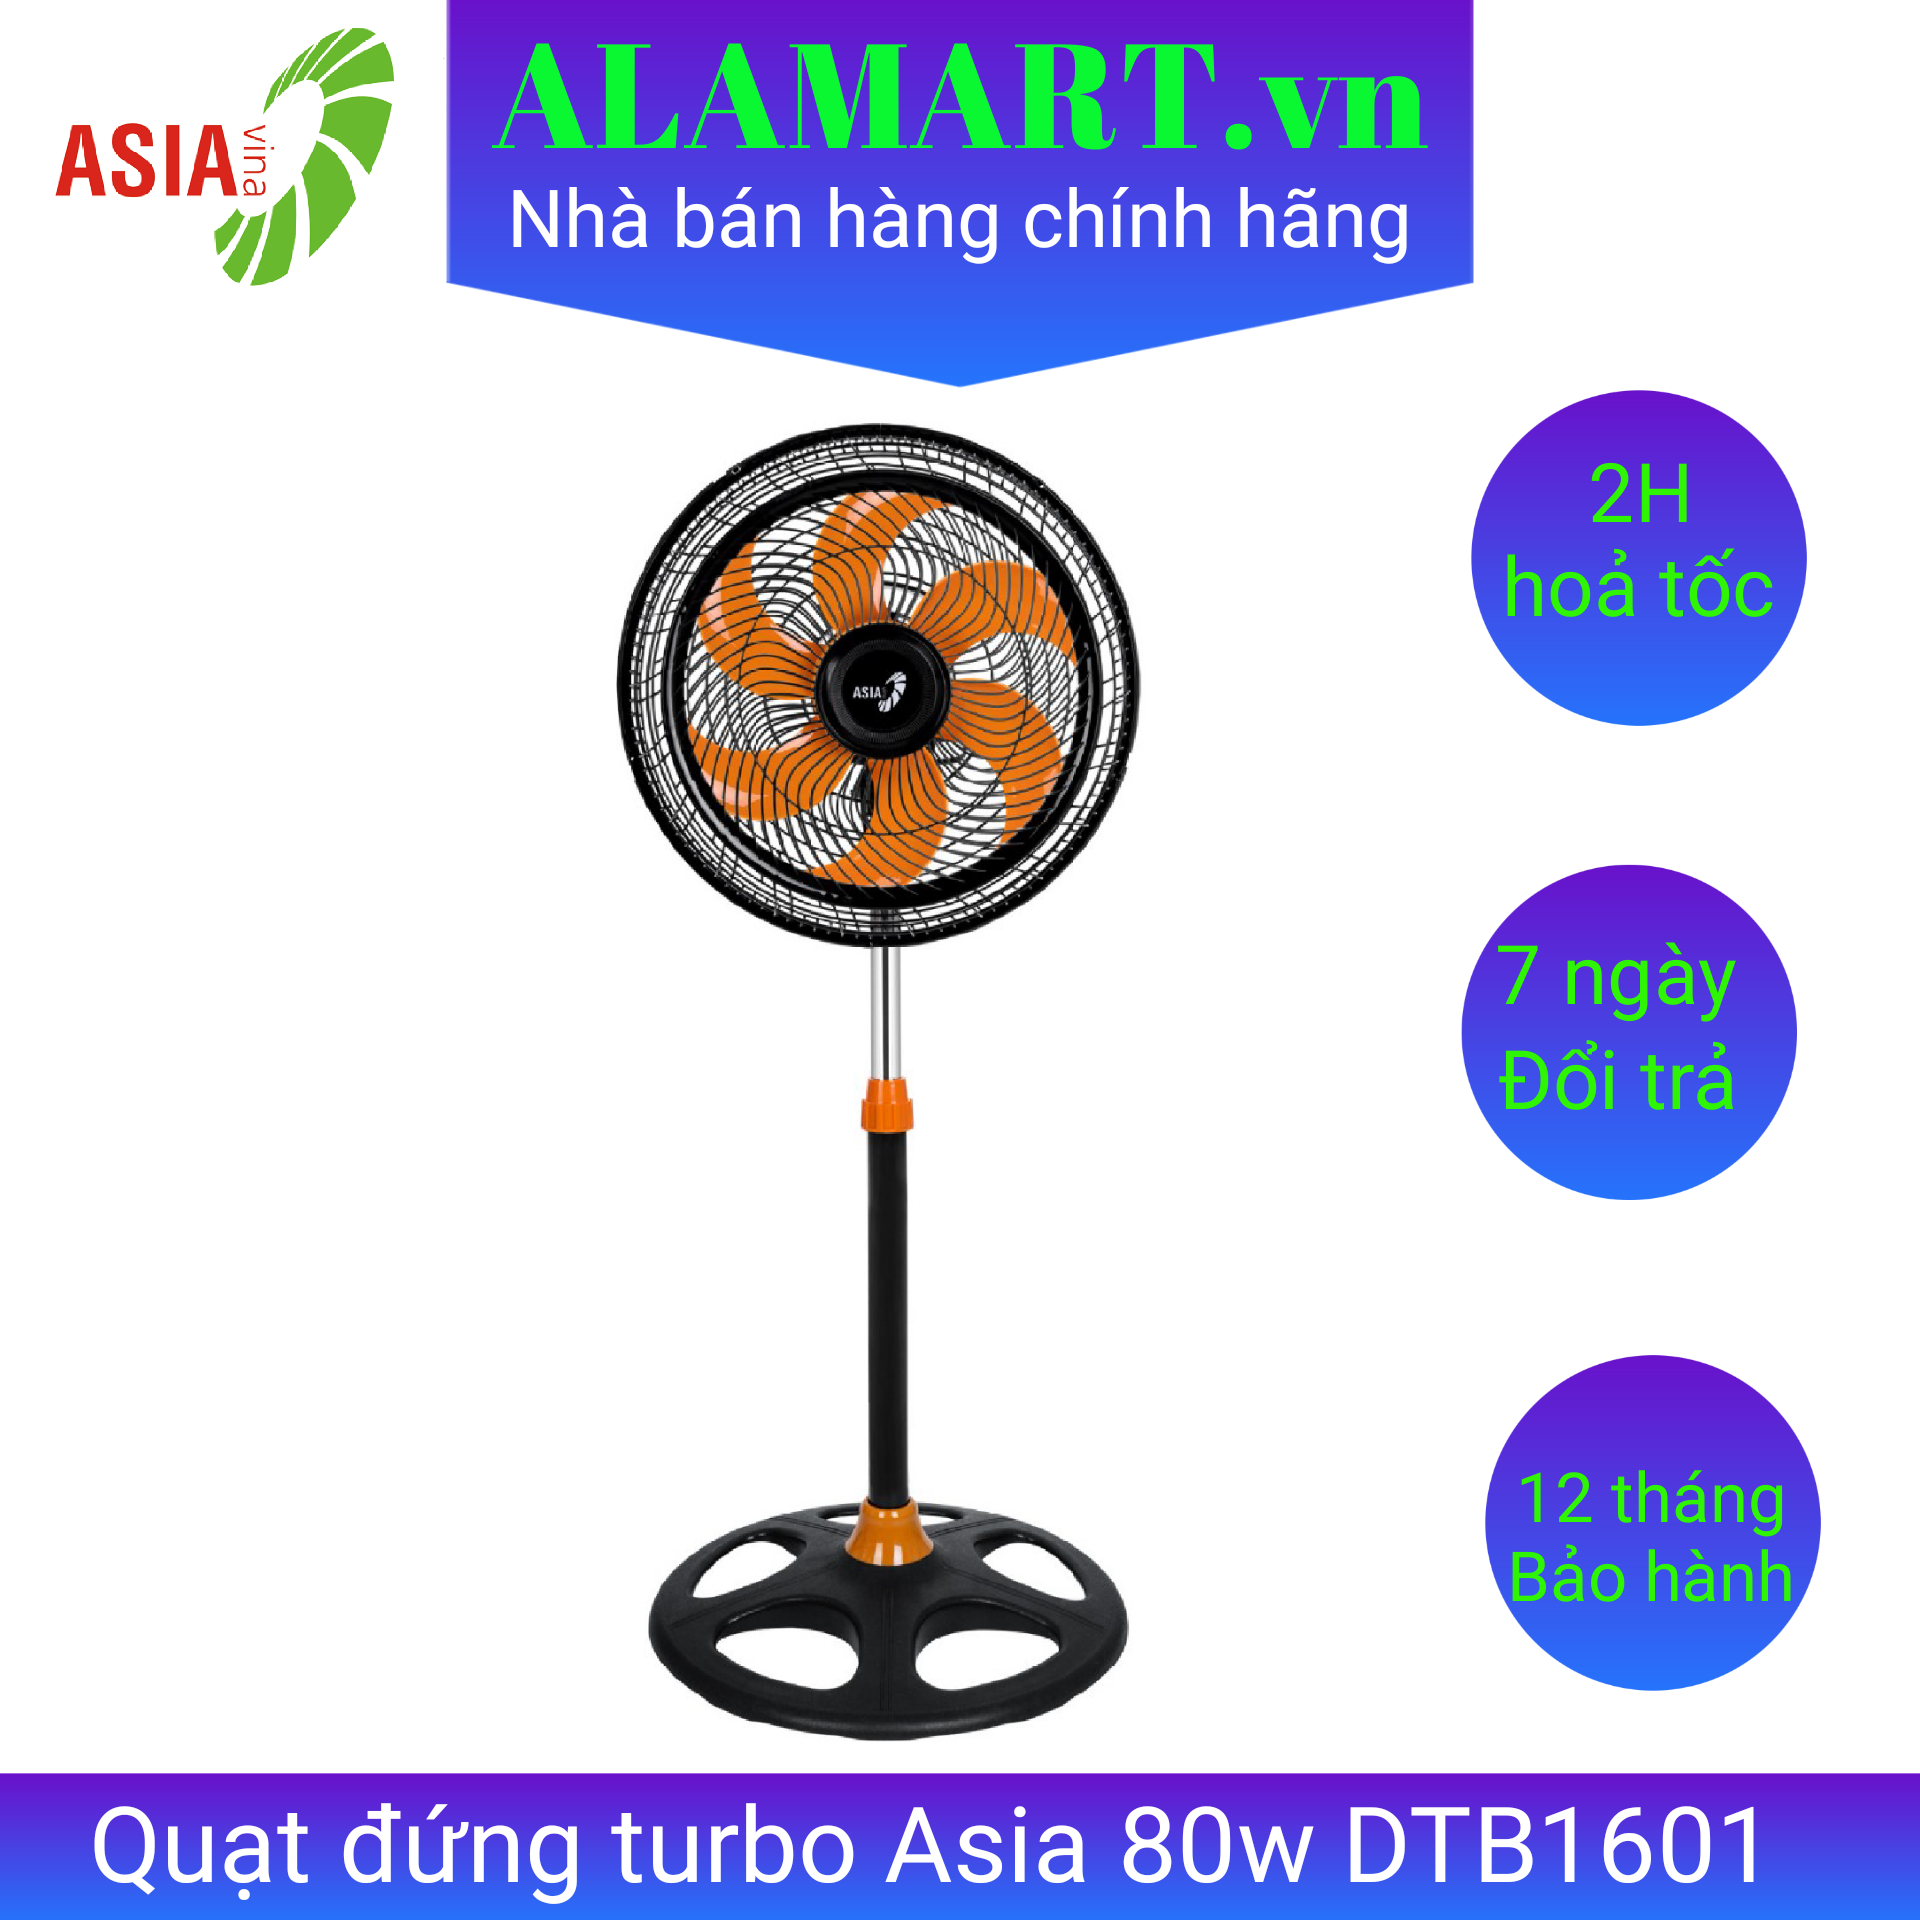 Quạt đứng turbo Asia DTB1601